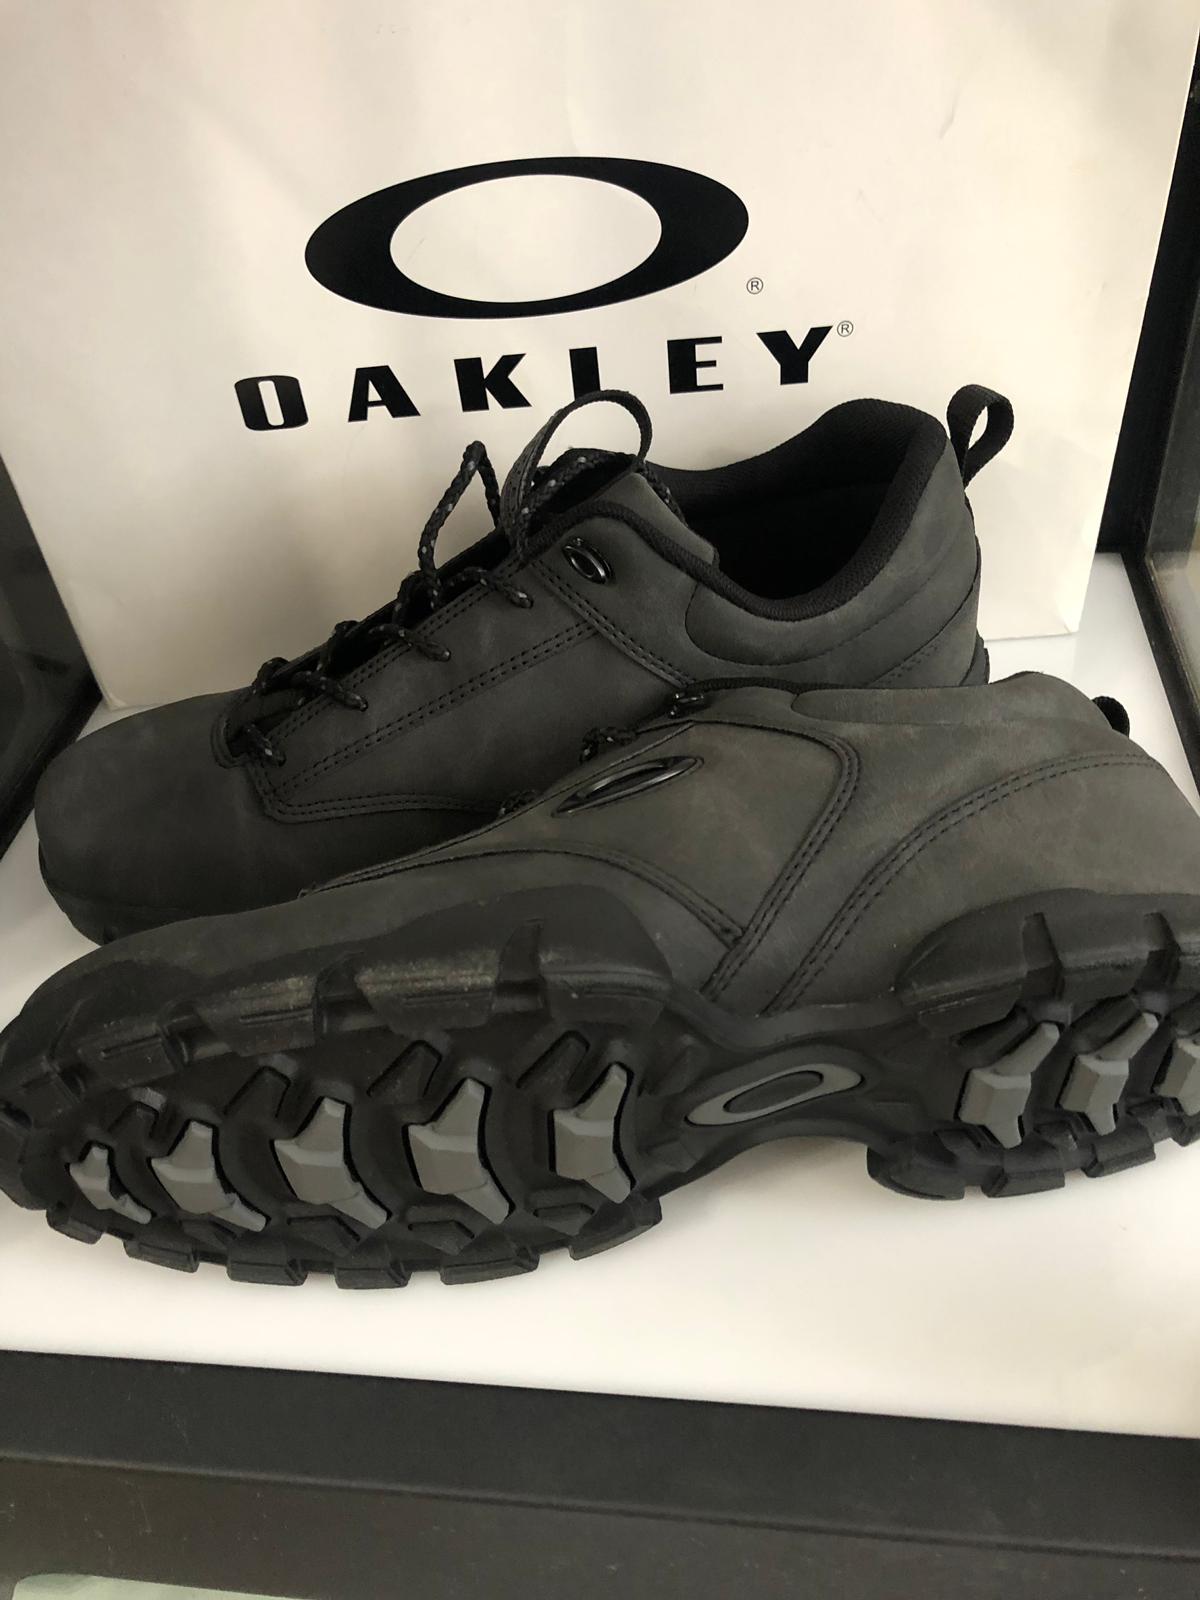 For Sale - Oakley shoes Gridlock | Oakley Forum